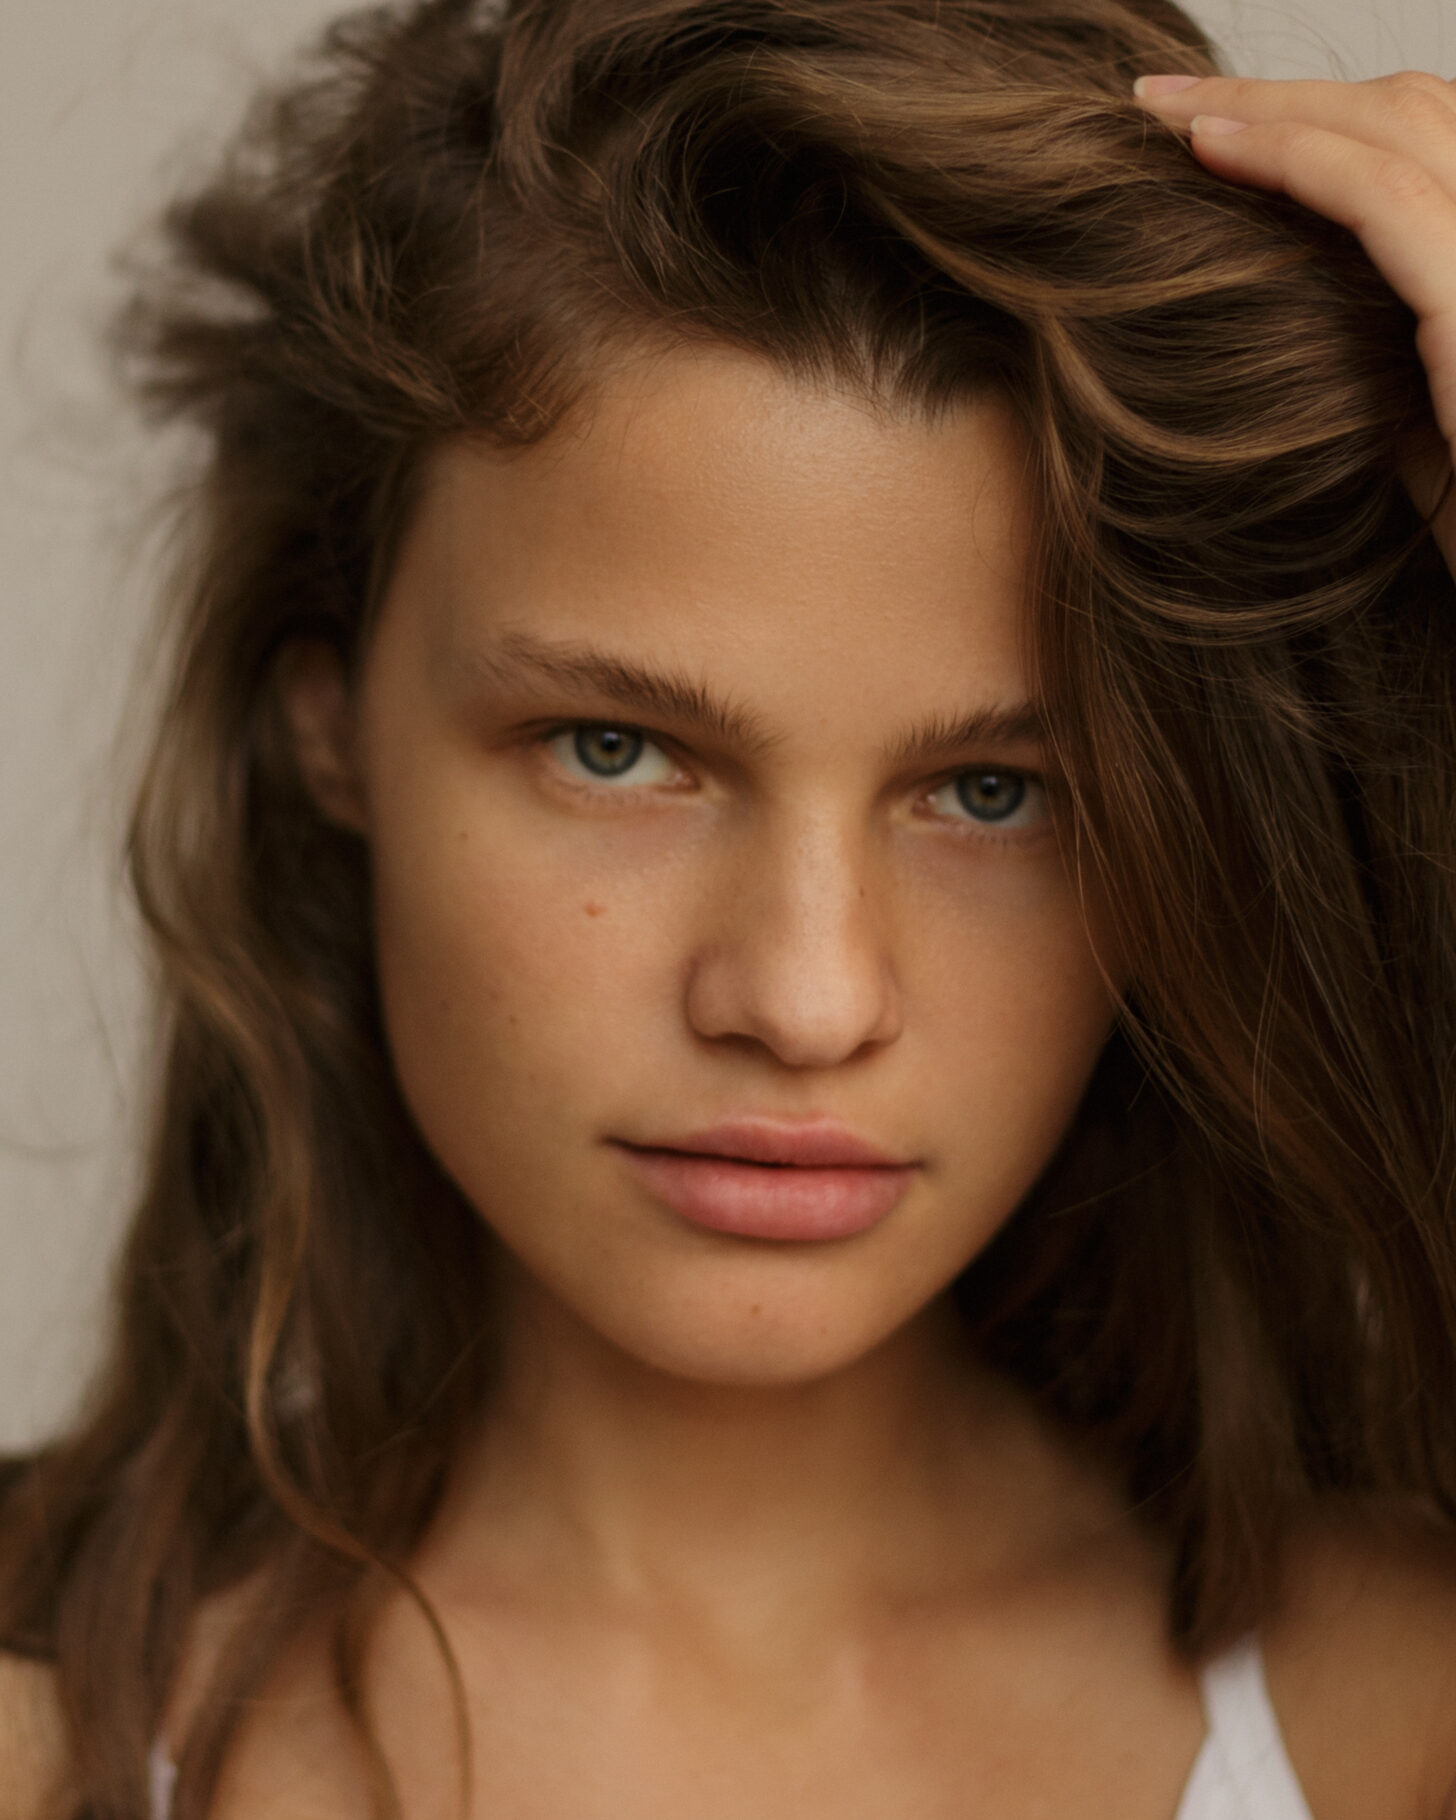 Olga Obumova - Unique Models